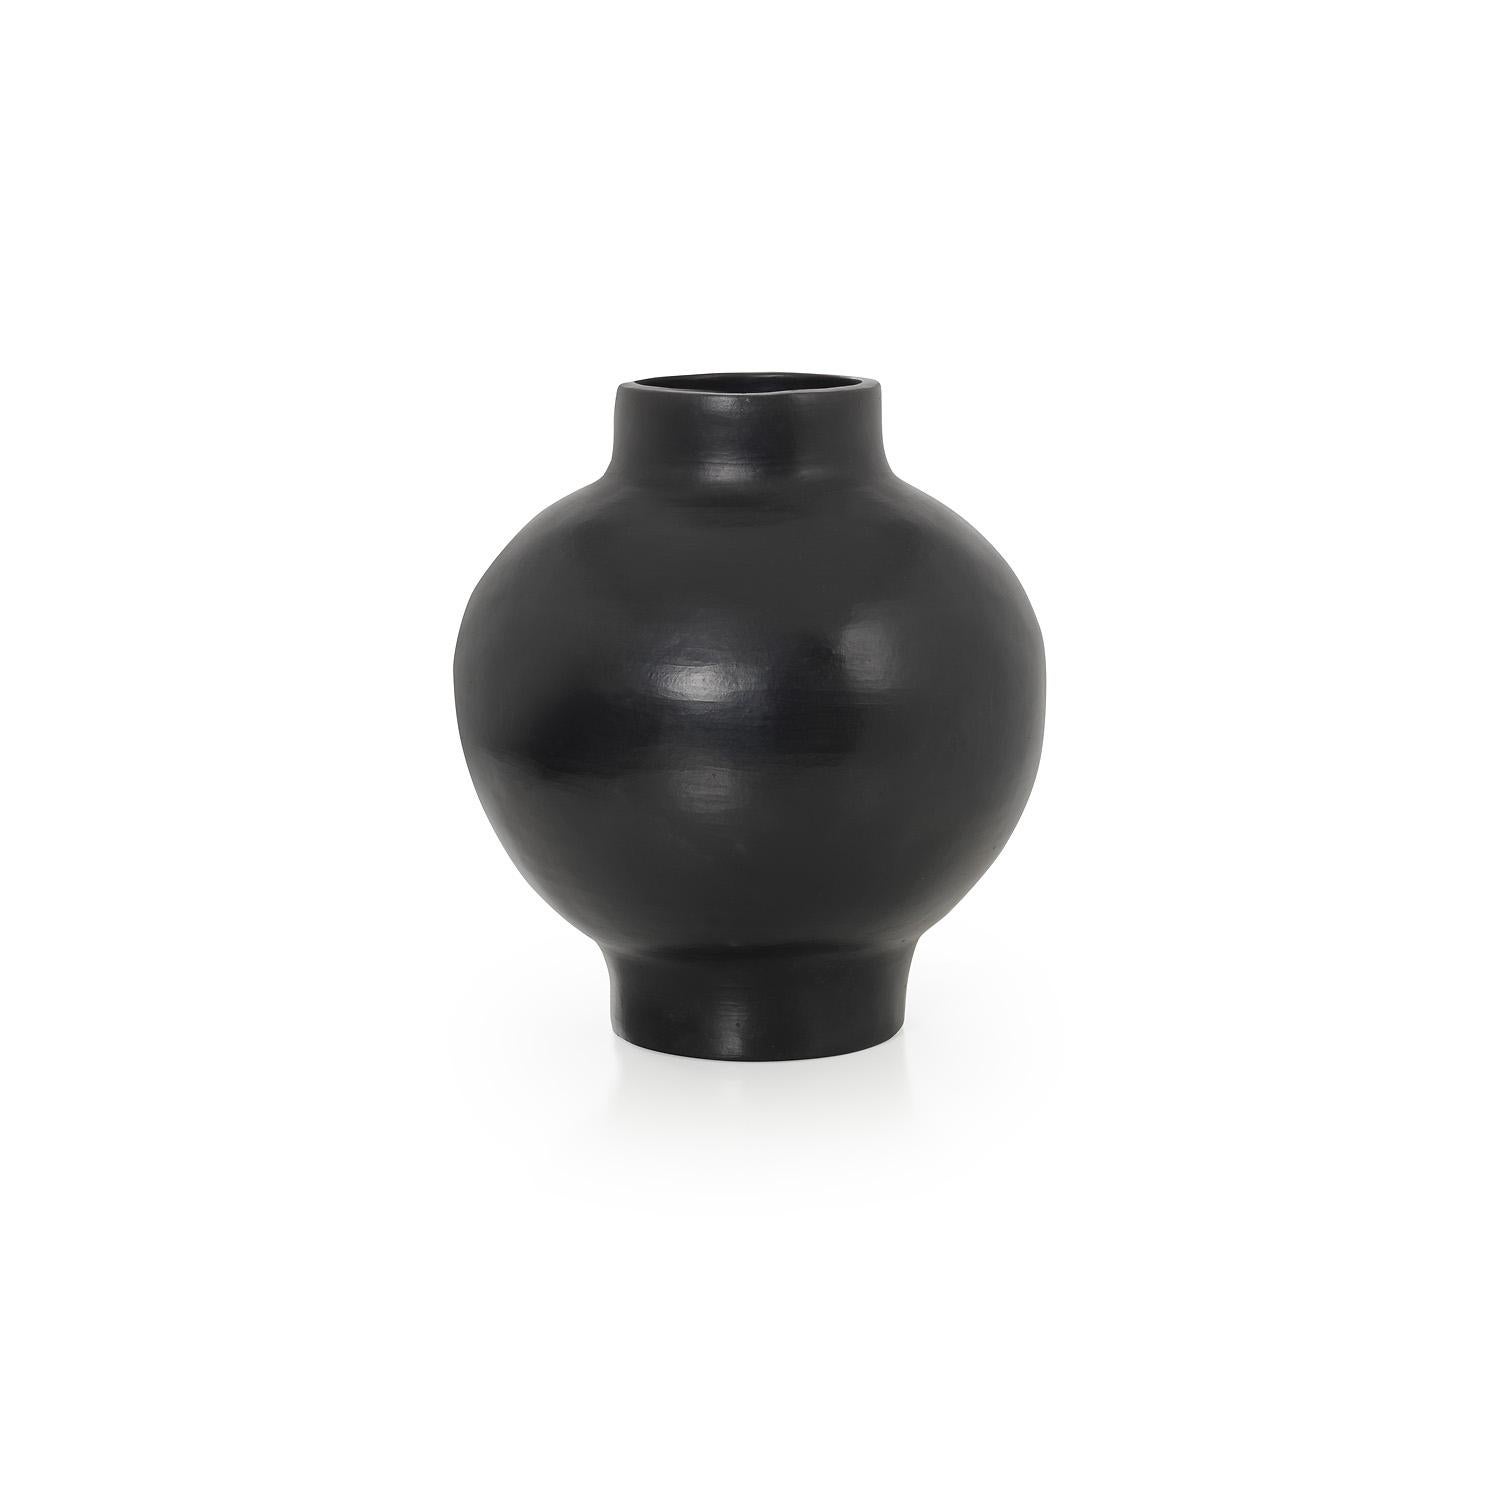 Grand vase de Sebastian Herkner
Matériaux : Céramique noire résistante à la chaleur. 
Technique : Glacé. Cuits au four et polis avec des pierres semi-précieuses. 
Dimensions : Diamètre 31 cm x H 34 cm 
Disponible en tailles small et mini.

Ce